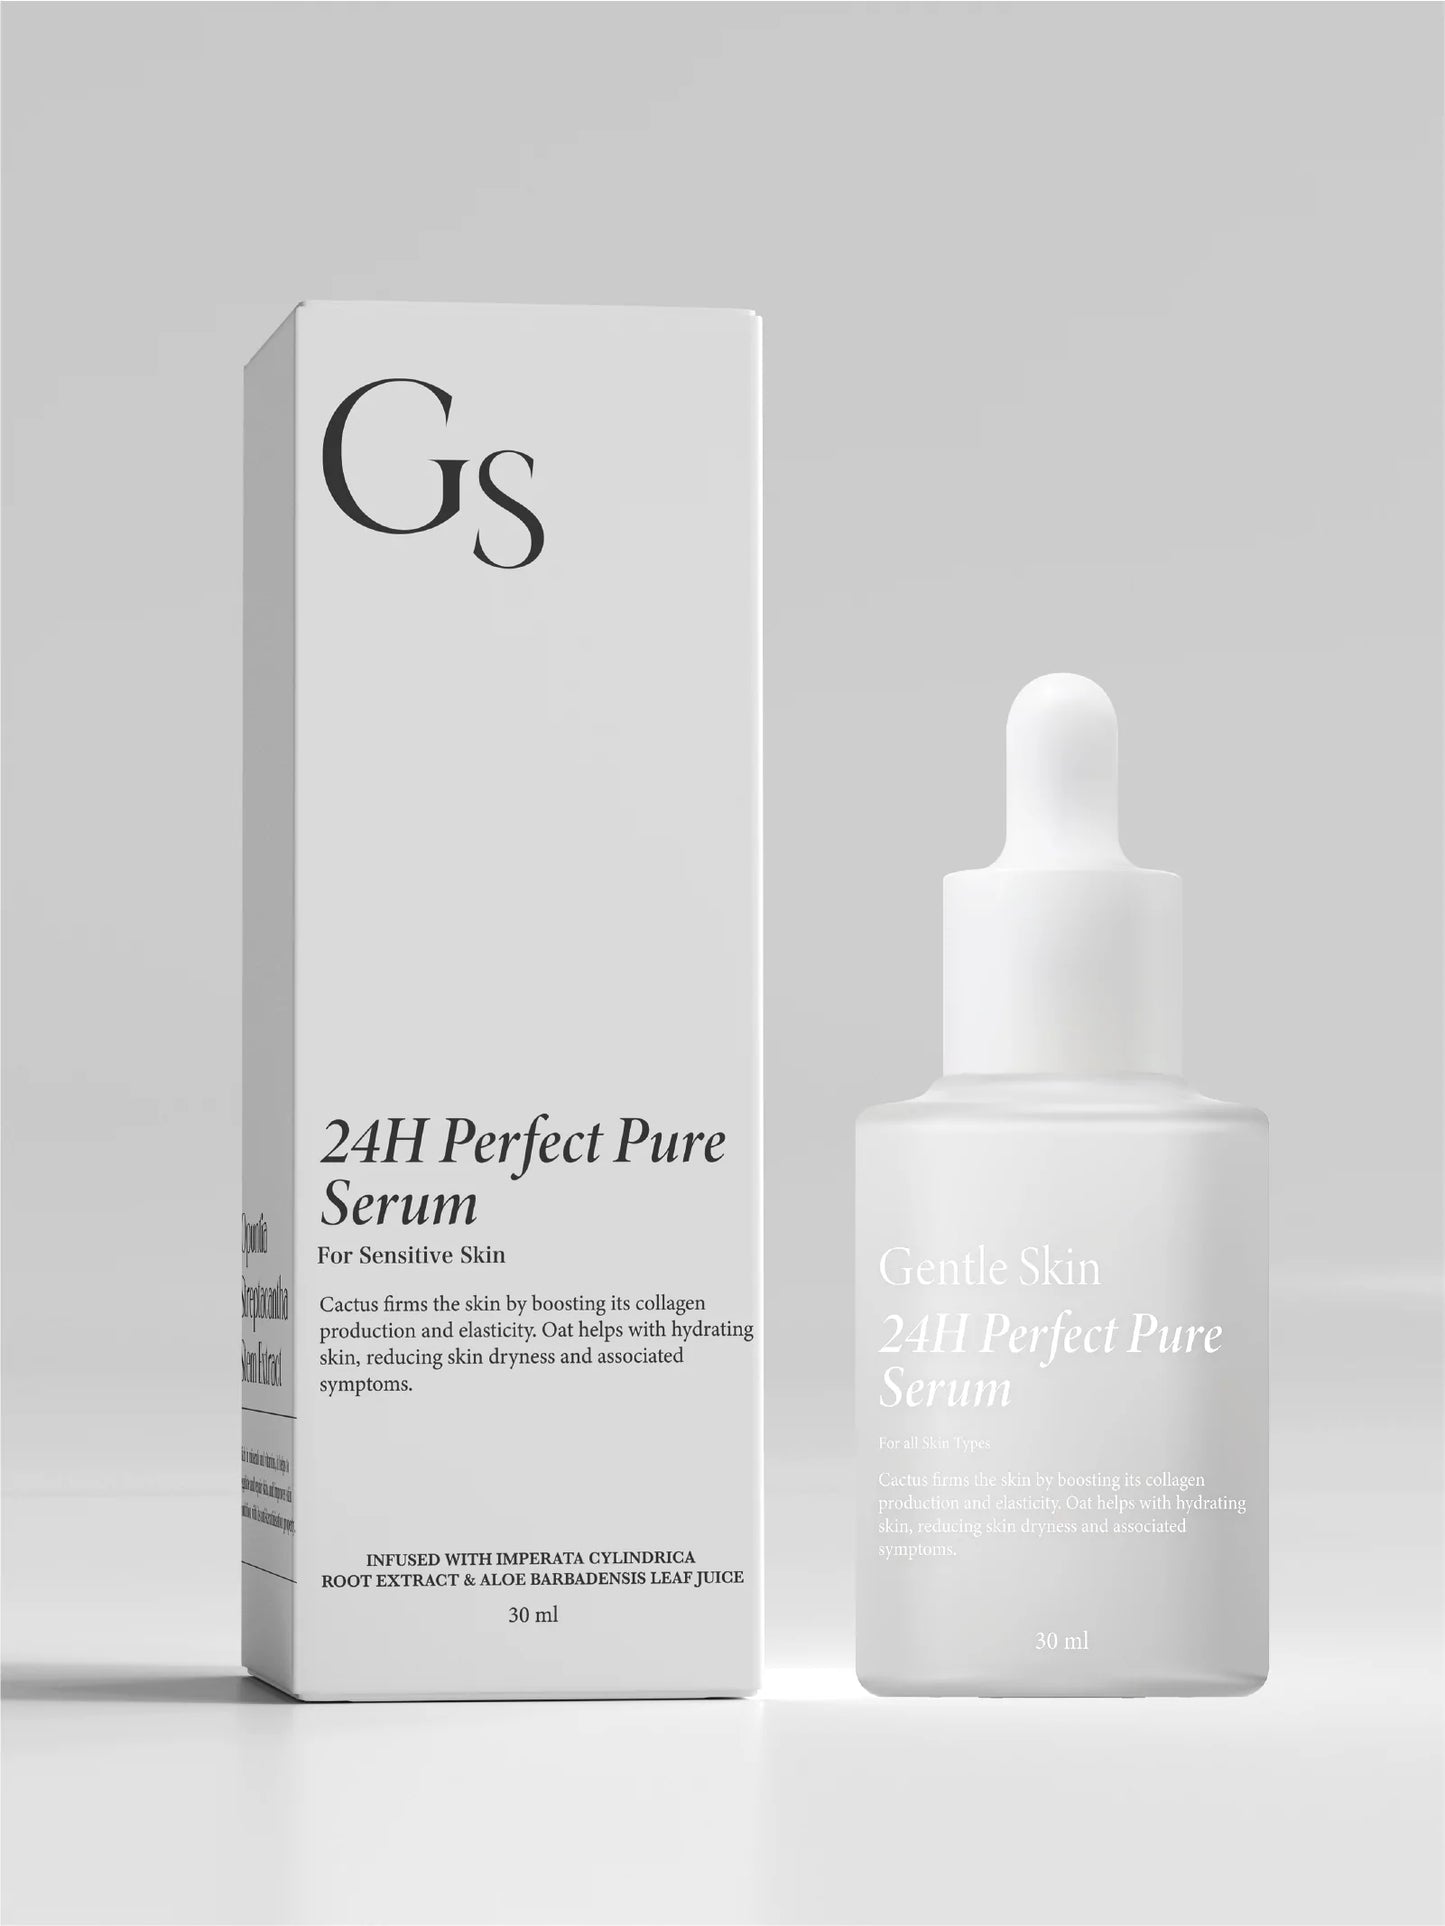 Gentle Skin 24H Perfect Pure Serum / 極效抗炎修復精華